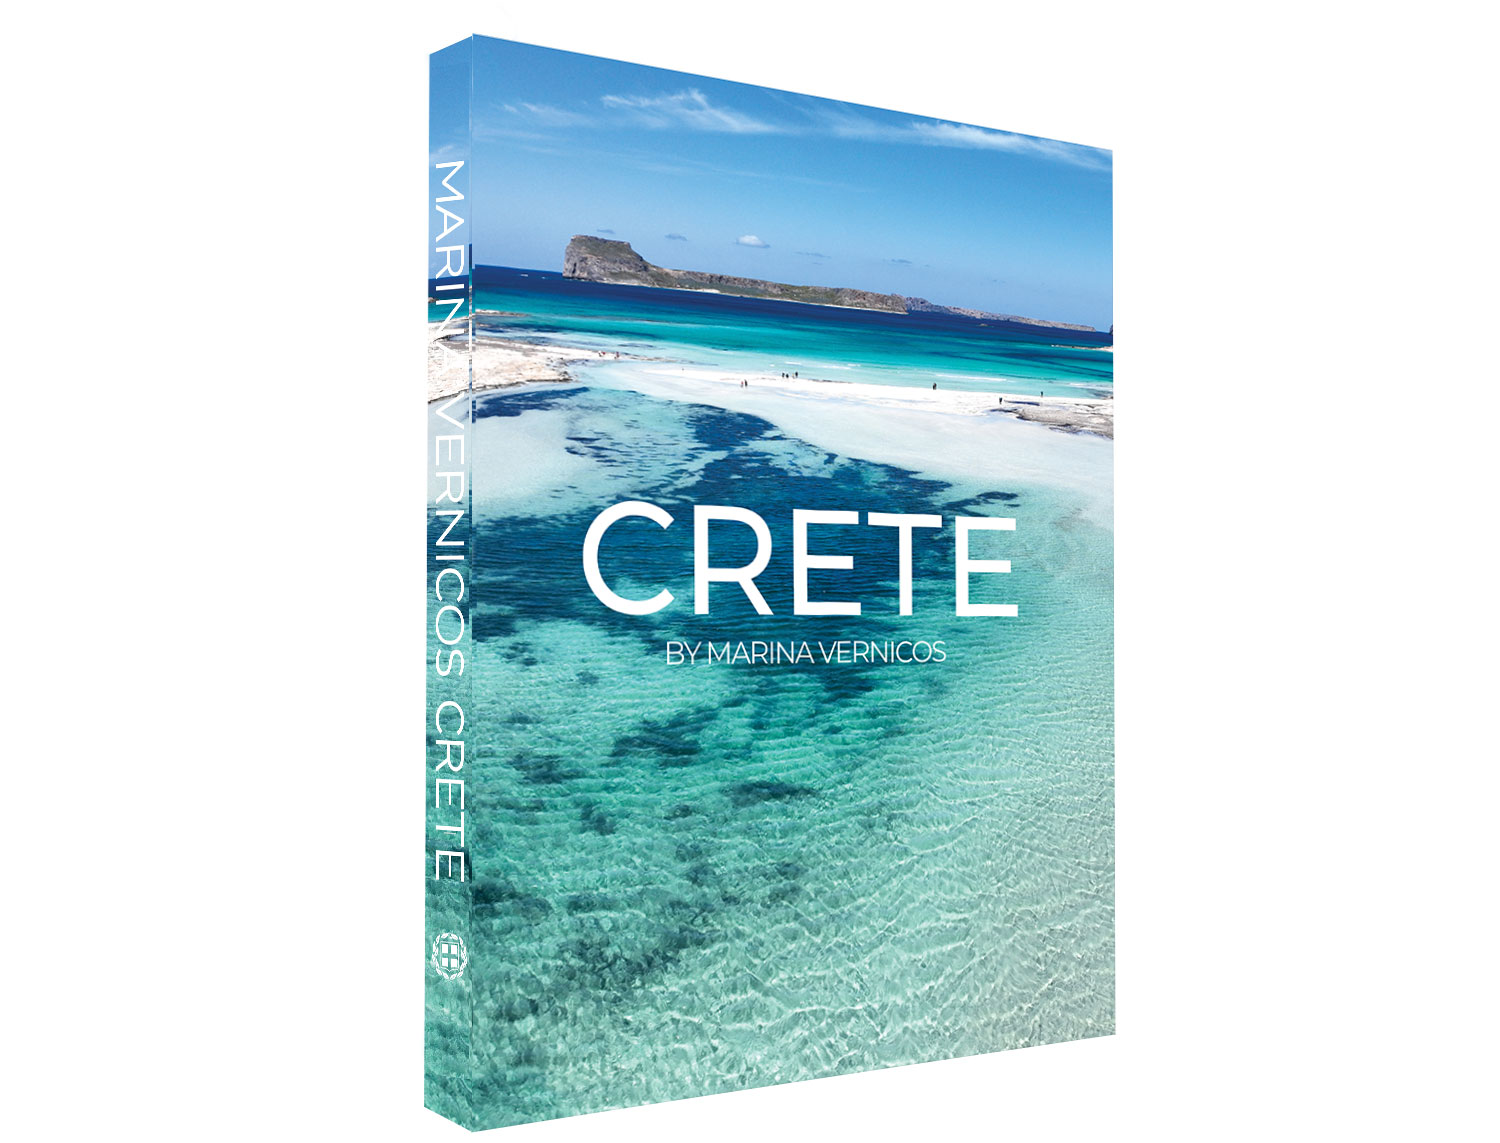 Crete-1